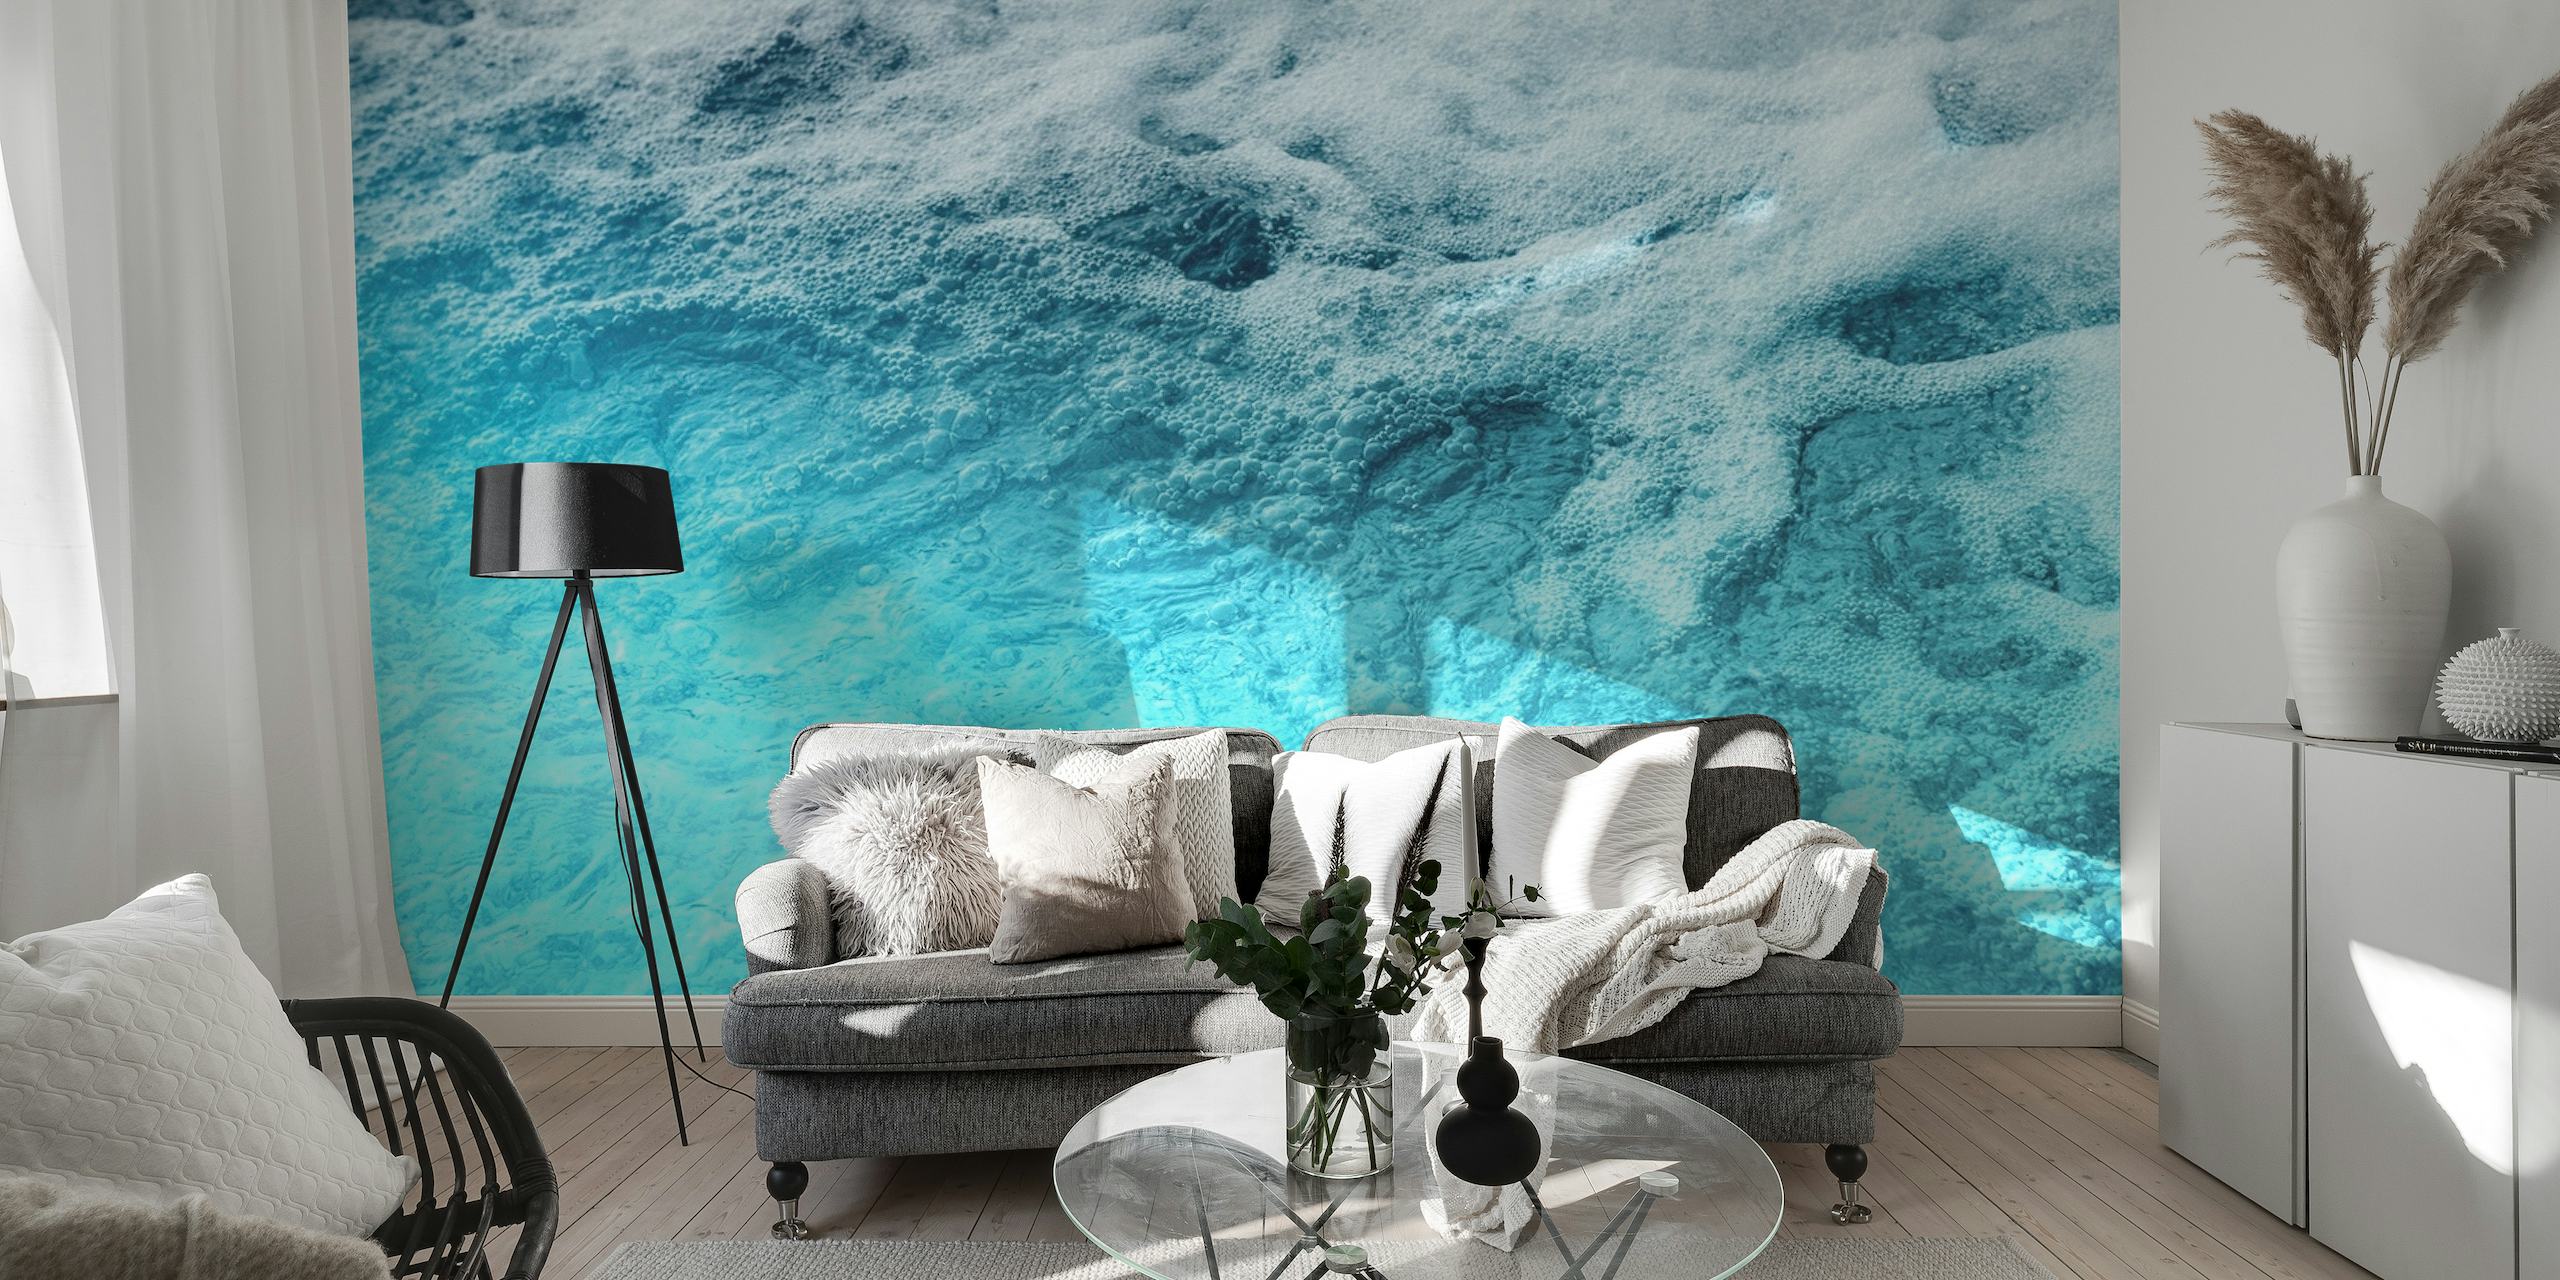 Muurschildering op het oceaanoppervlak met blauwtinten die rust en diepte uitbeelden